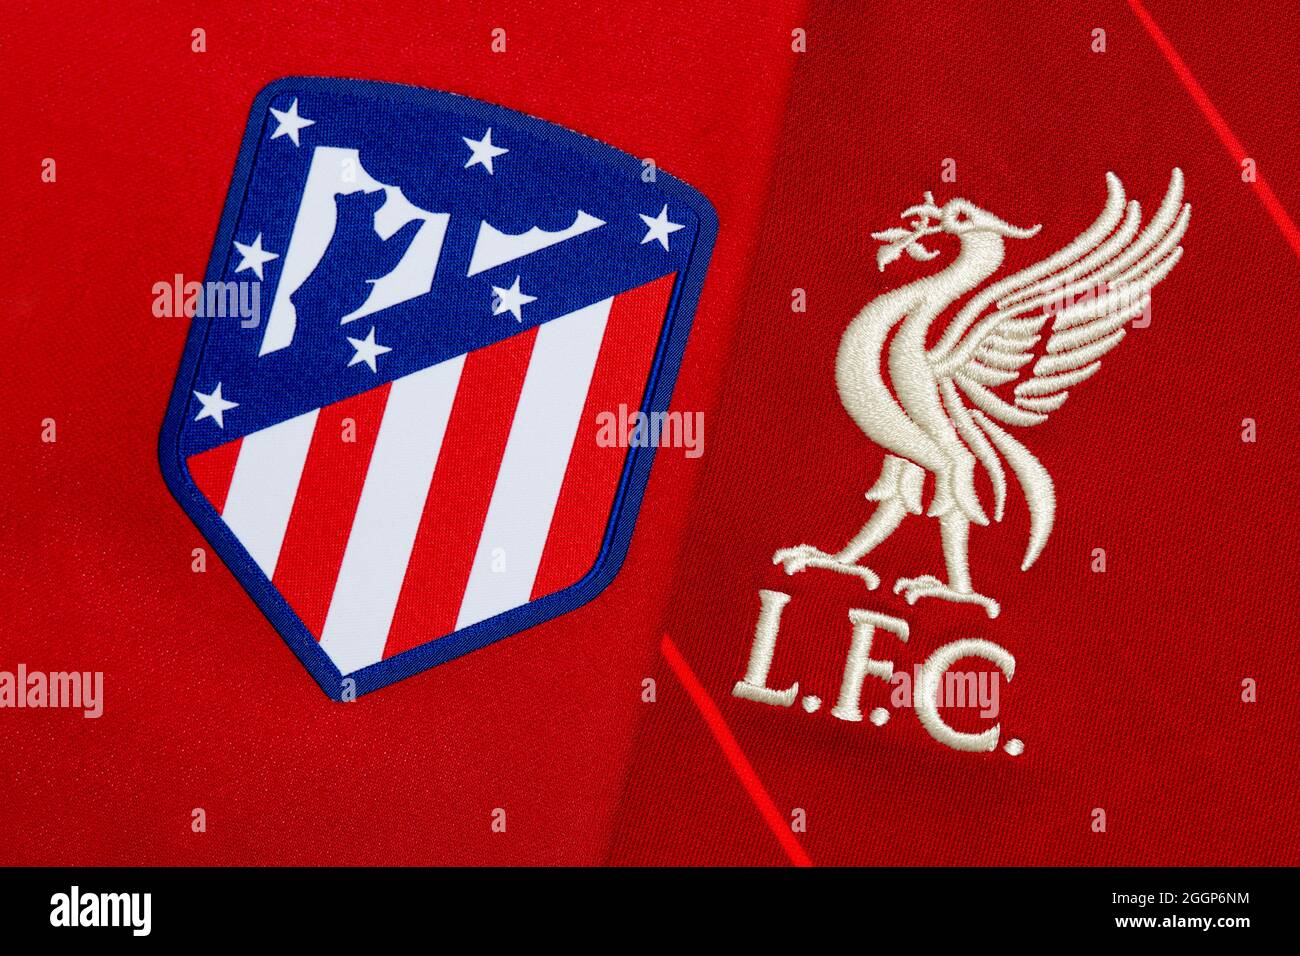 Gros plan de l'écusson du club Atletico Madrid et Liverpool FC. Banque D'Images